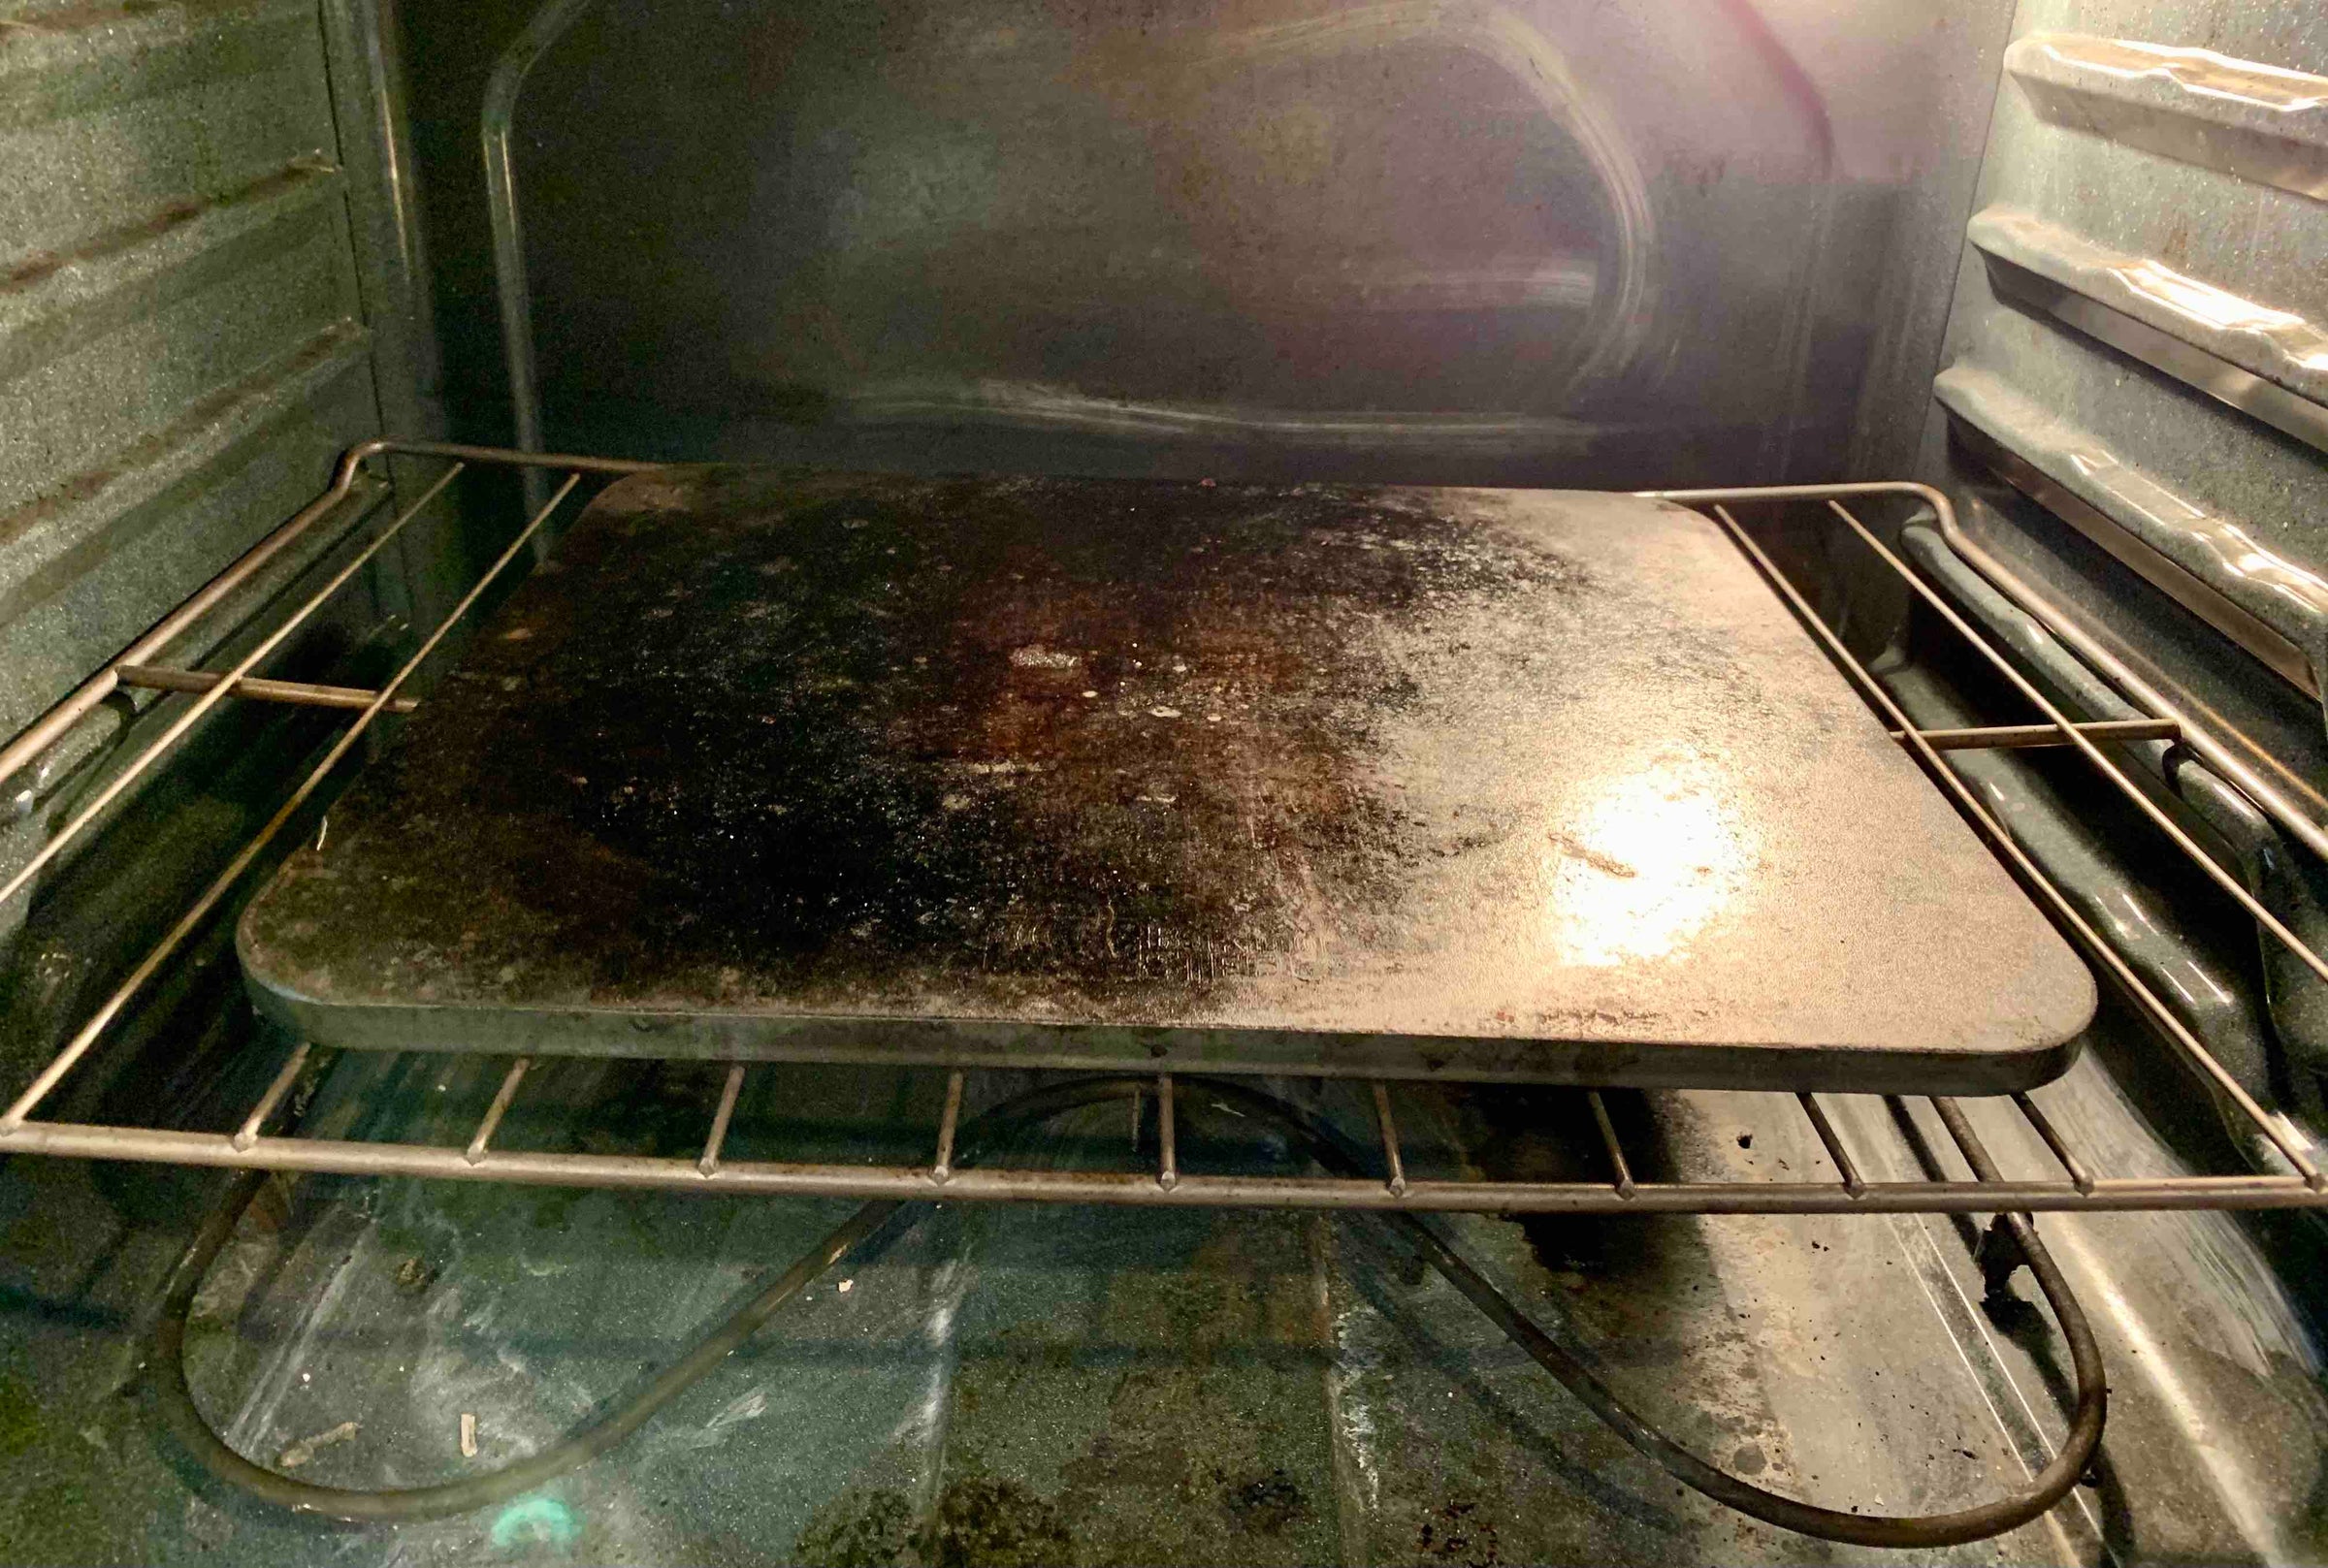 Bakingsteel in home oven